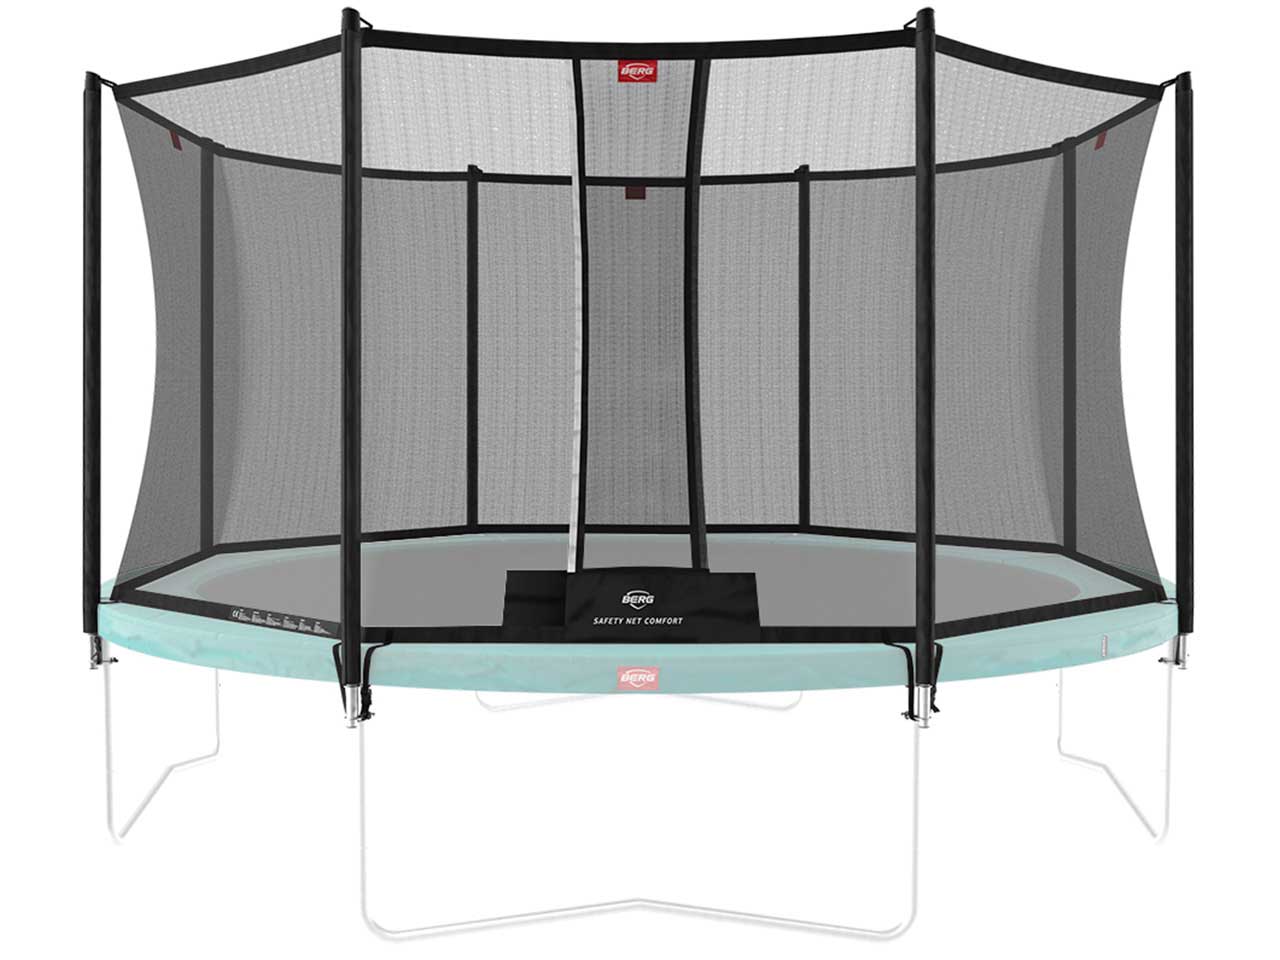 https://www.spielheld.de/out/pictures/master/product/1/spielheld-berg-trampolin-sicherheitsnetz-comfort.jpg